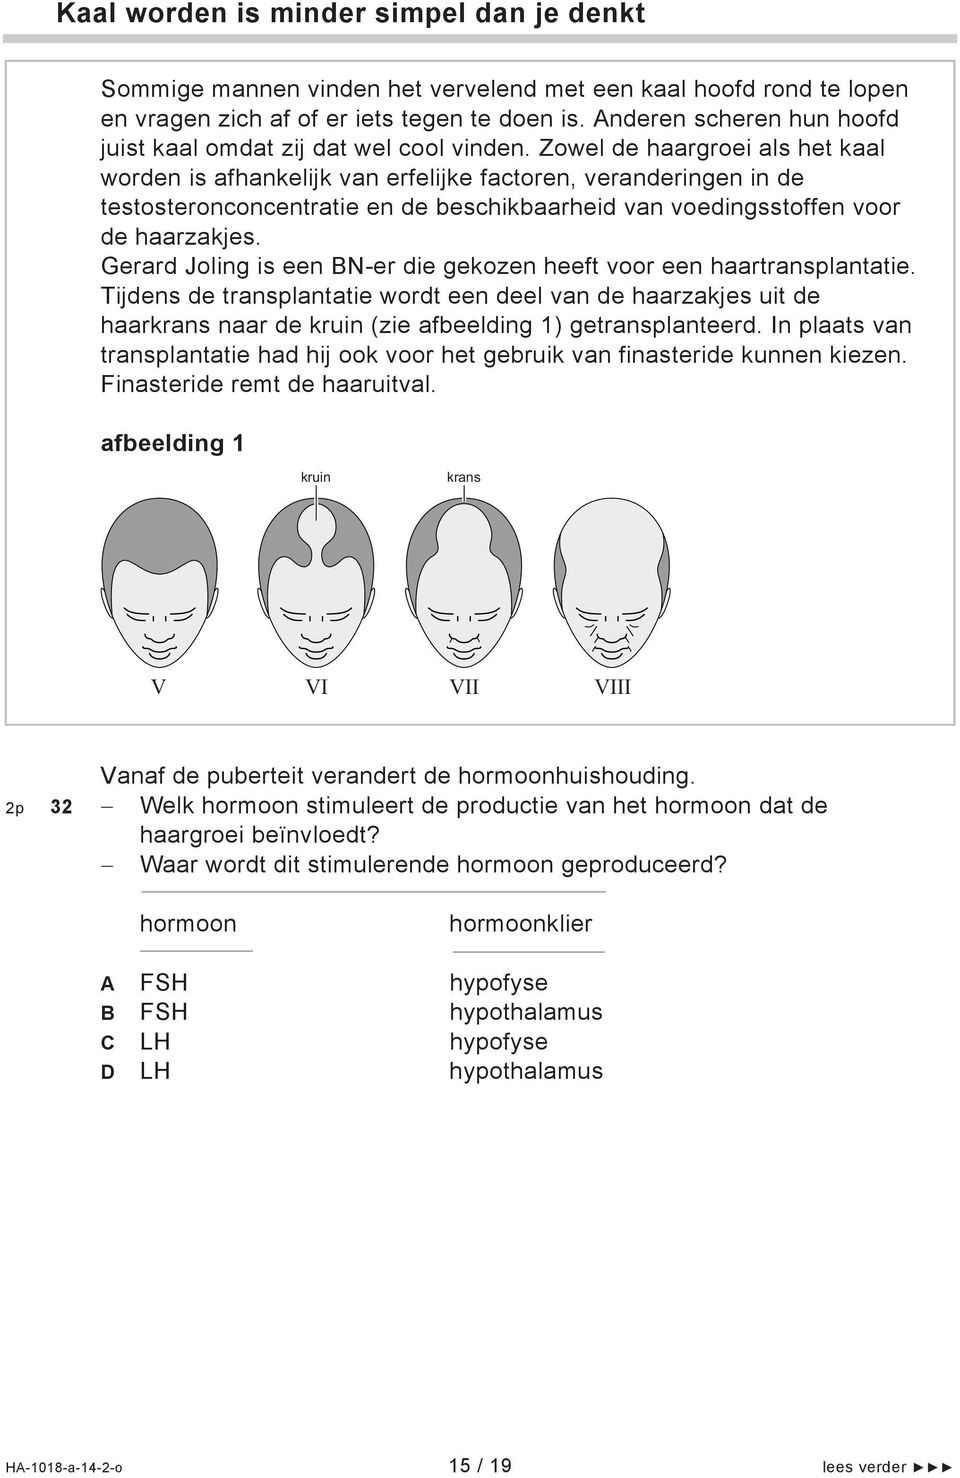 Zowel de haargroei als het kaal worden is afhankelijk van erfelijke factoren, veranderingen in de testosteronconcentratie en de beschikbaarheid van voedingsstoffen voor de haarzakjes.